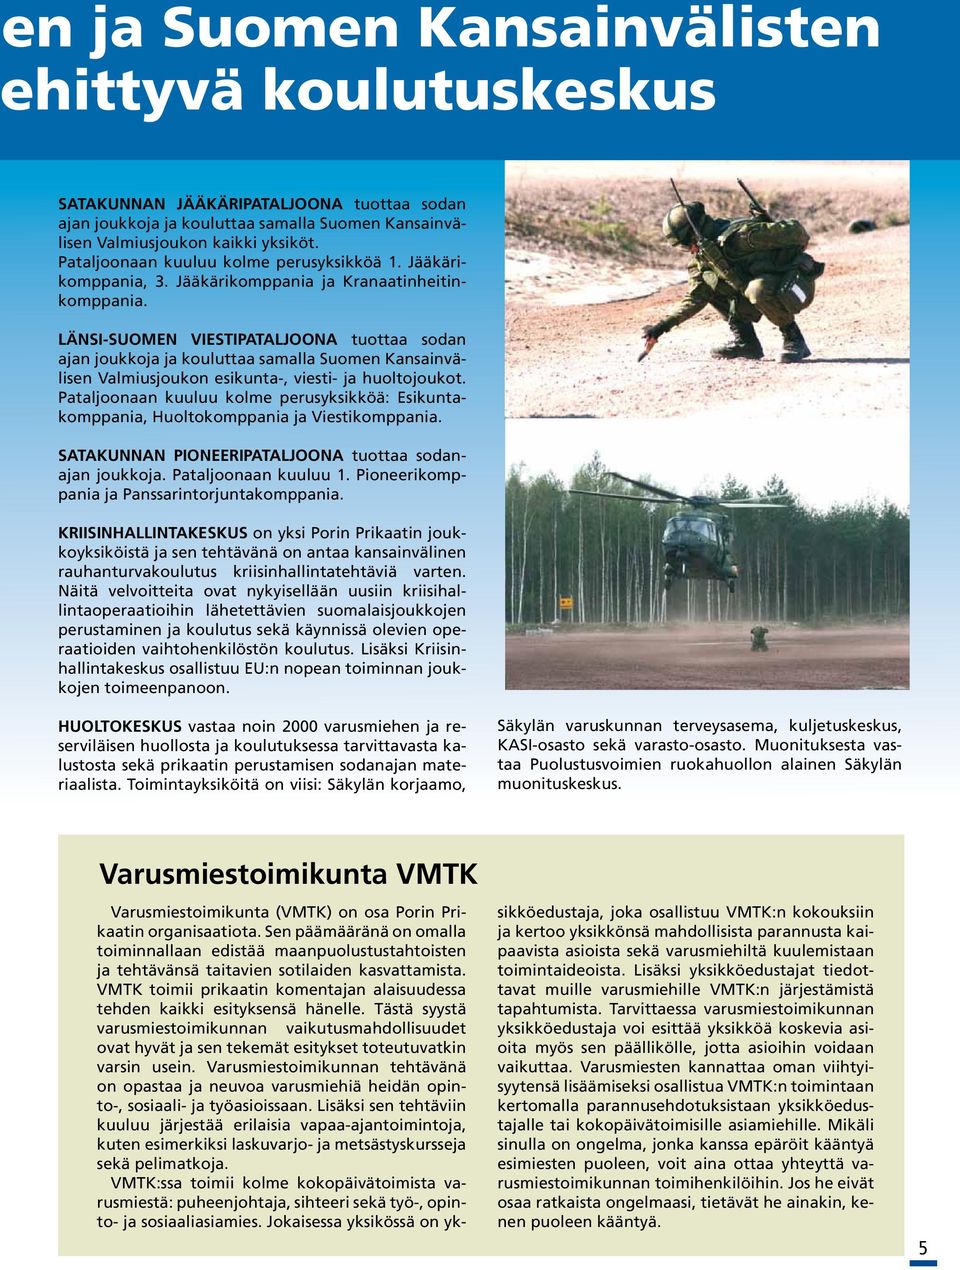 LÄNSI-SUOMEN VIESTIPATALJOONA tuottaa sodan ajan joukkoja ja kouluttaa samalla Suomen Kansainvälisen Valmiusjoukon esikunta-, viesti- ja huoltojoukot.